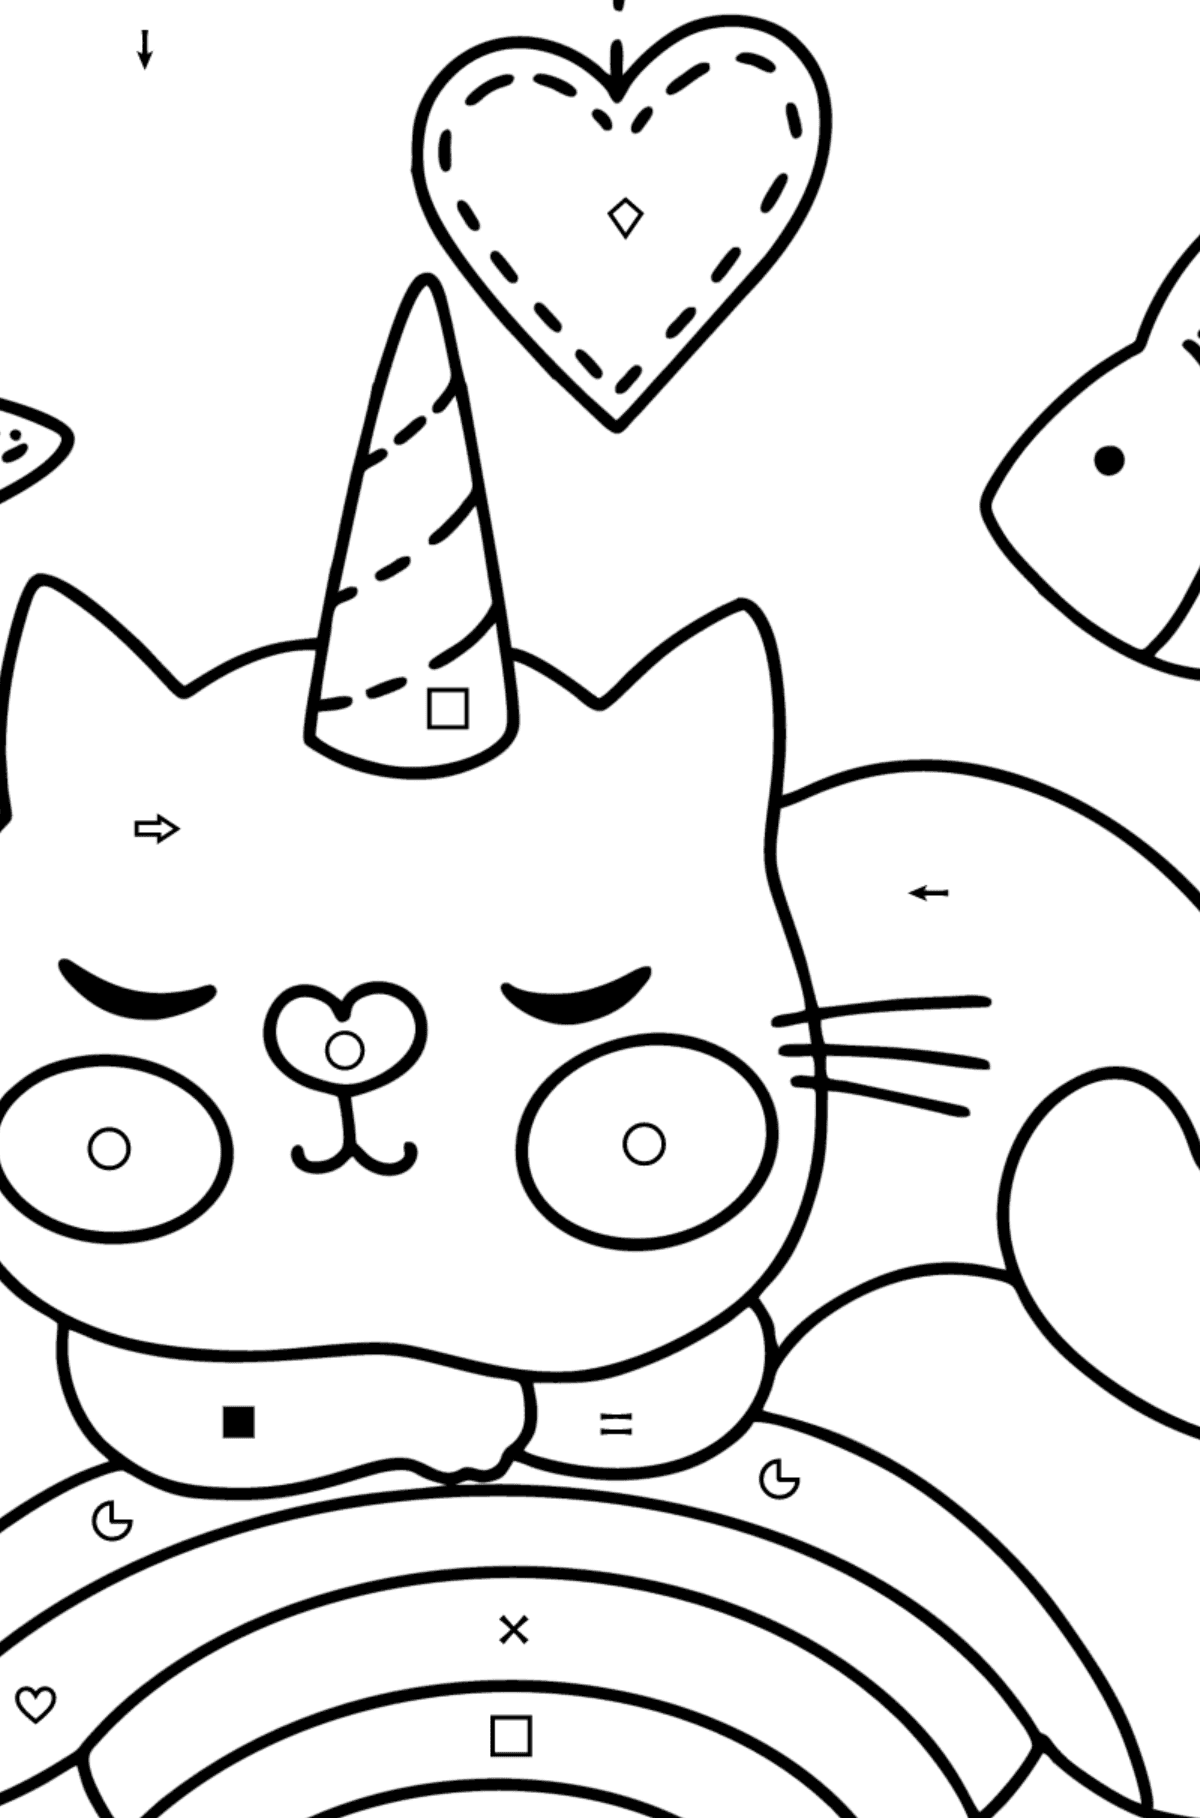 Dibujo de Precioso Gato Unicornio para colorear - Colorear por Símbolos para Niños